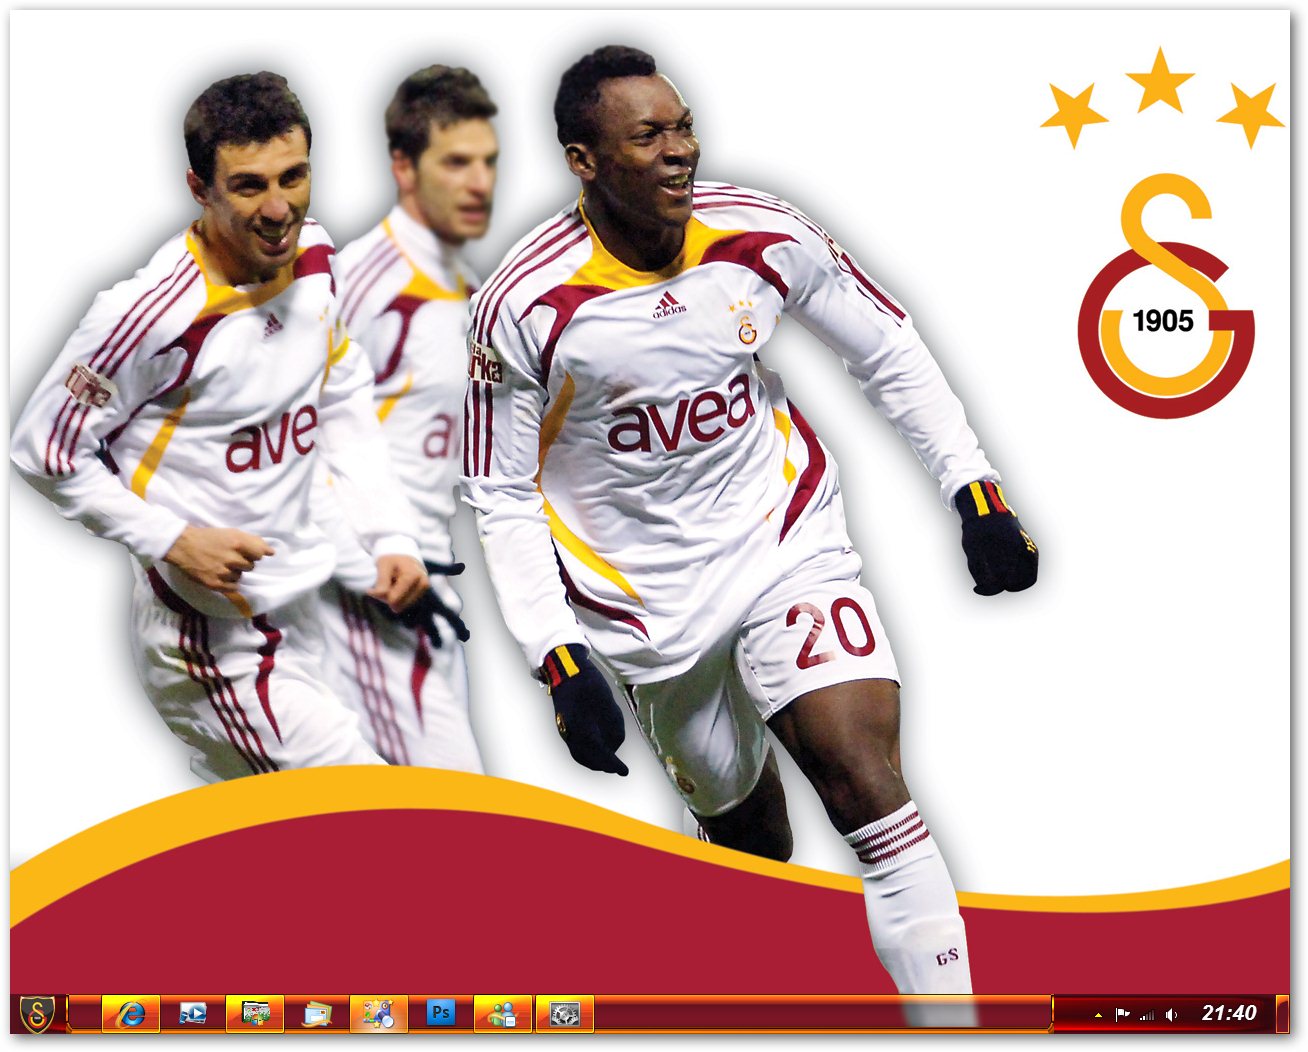 Windows7 Galatasaray Teması (Gece)Tek Fark Budur windows7 Galatasaray